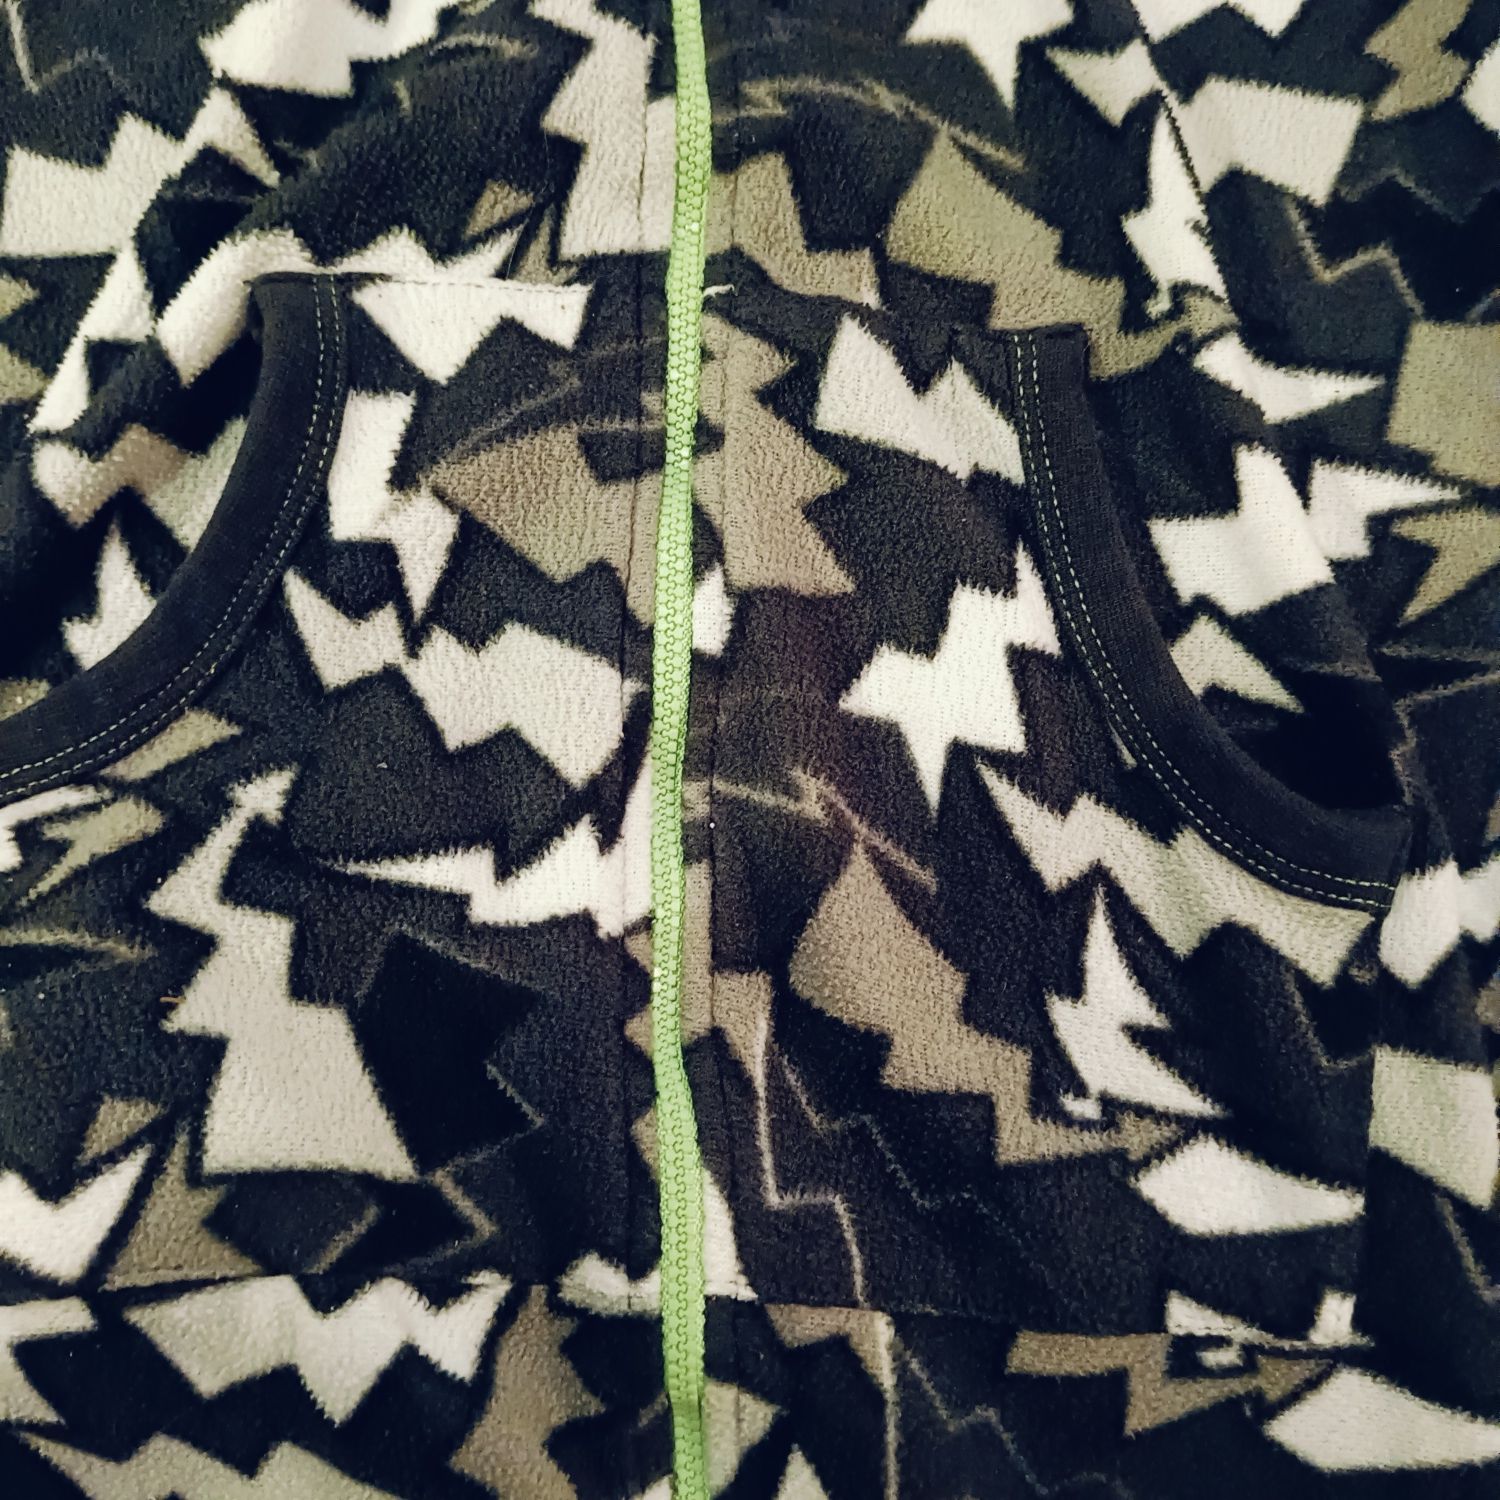 Kombinezon, onesie, piżama jednoczęściowa, pajac, rozmiar 146/152 cm